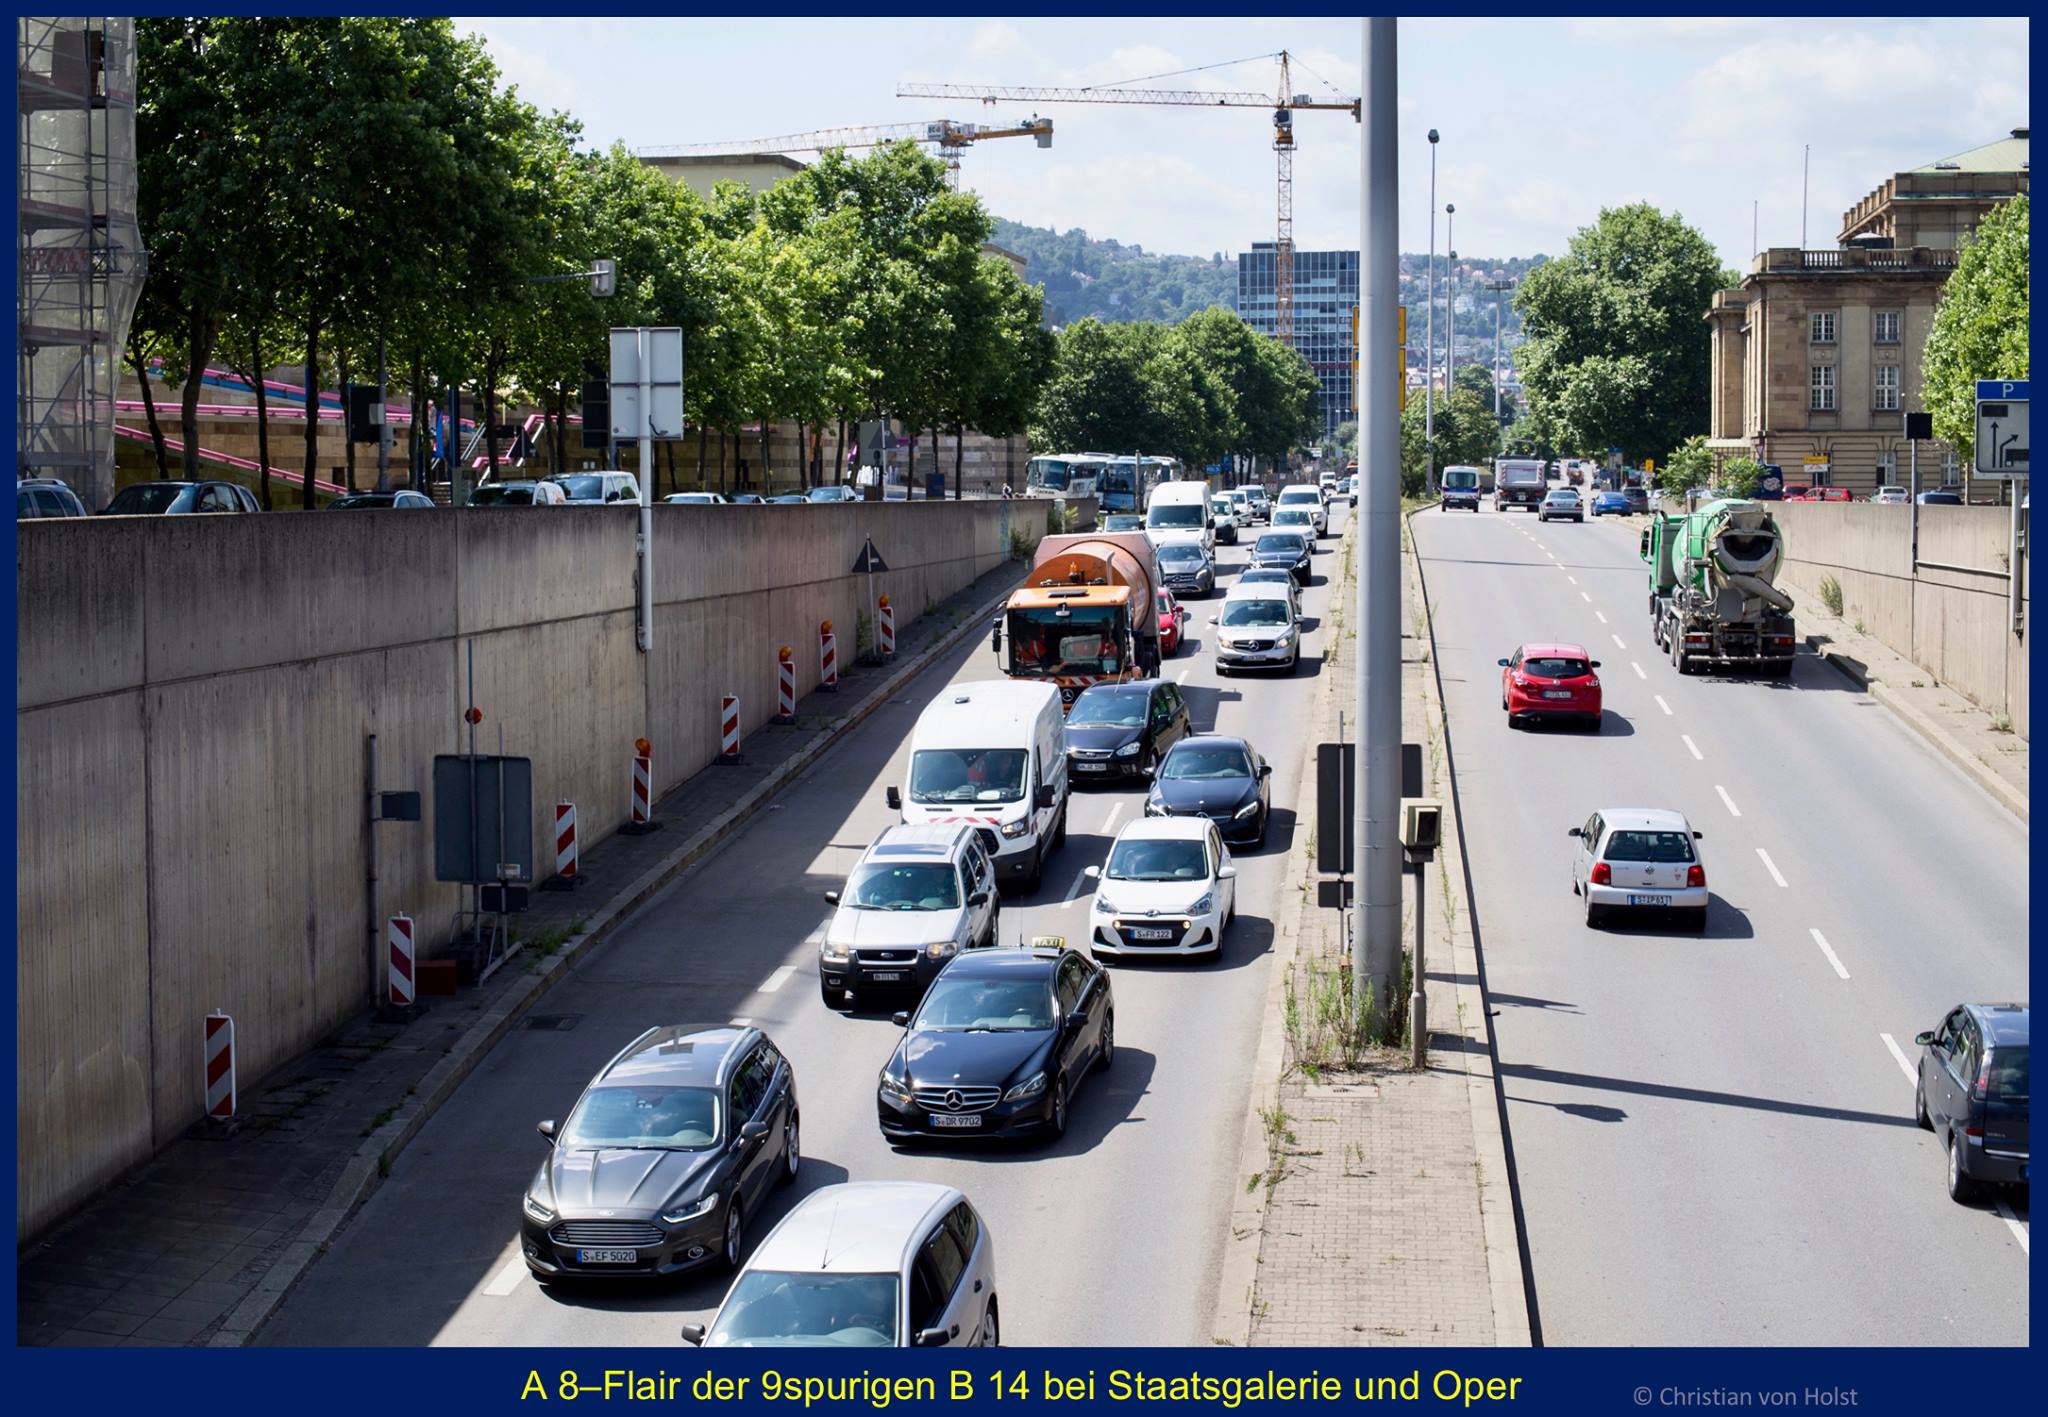 Stuttgarts Stadtautobahn B14:ca 100.000 Fahrzeuge passieren täglich die Staatsgalerie